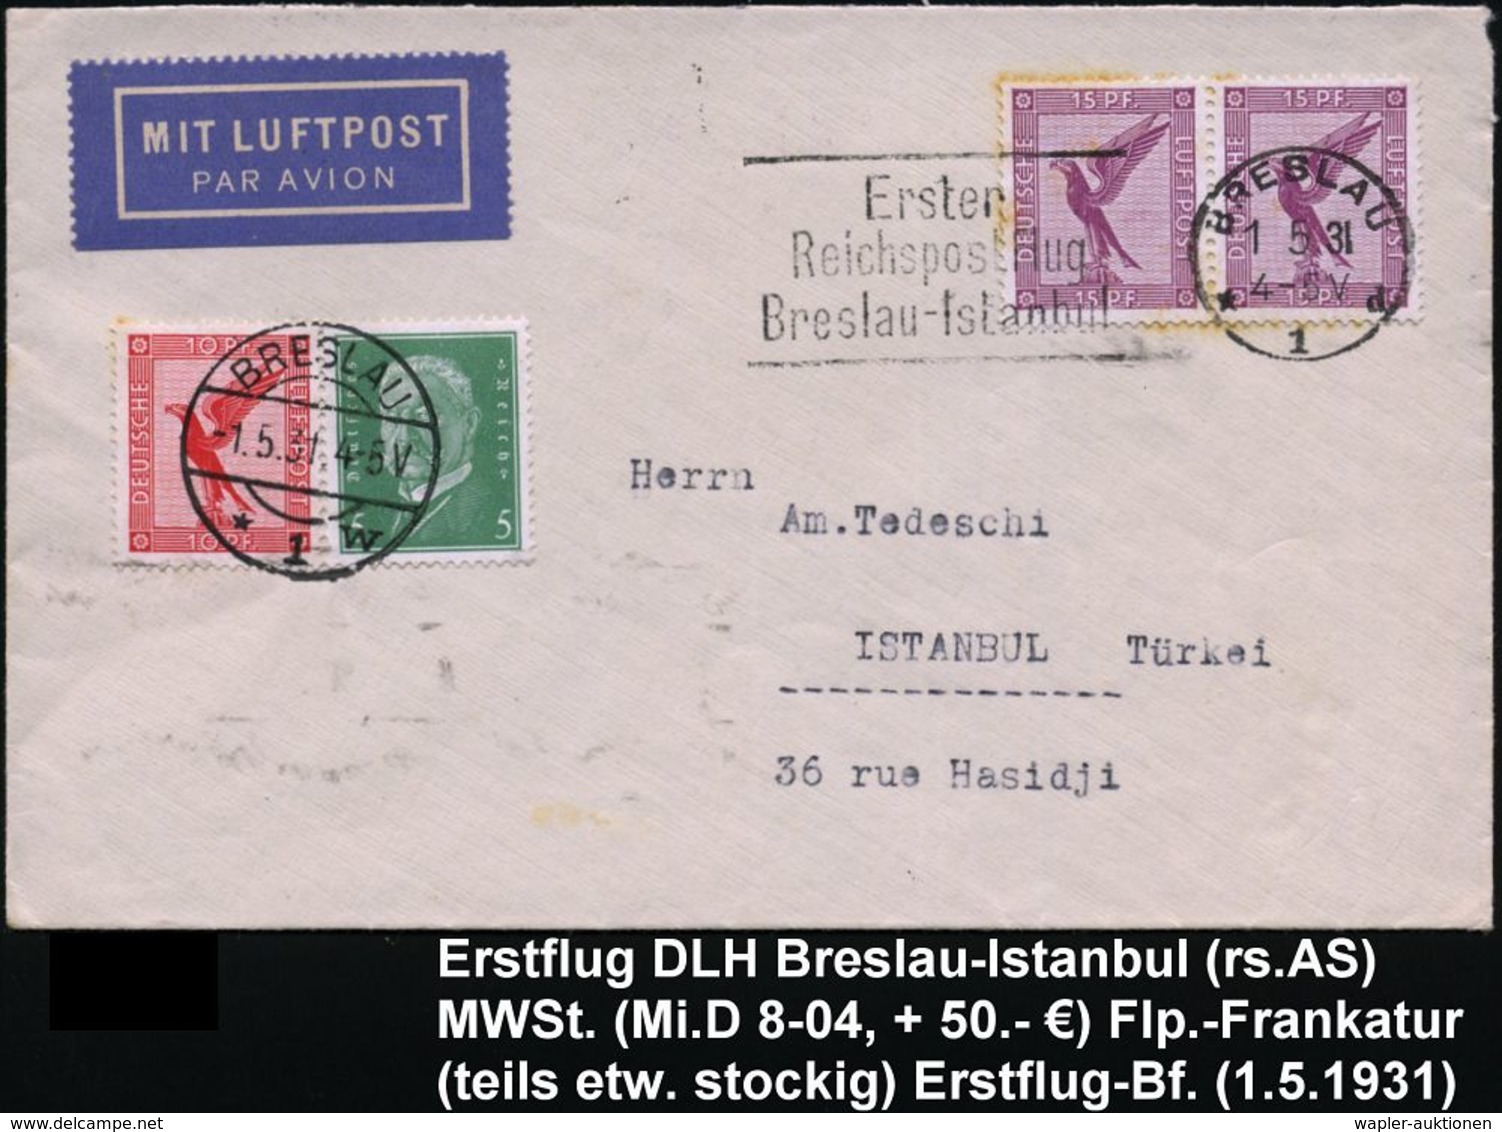 DEUTSCHE LUFTHANSA (DLH): ERSTFLÜGE / SONDERFLÜGE / REGULÄRE FLUGPOST : BRESLAU/ *1d/ Erster/ Reichspostflug/ Breslau -  - Sonstige (Luft)